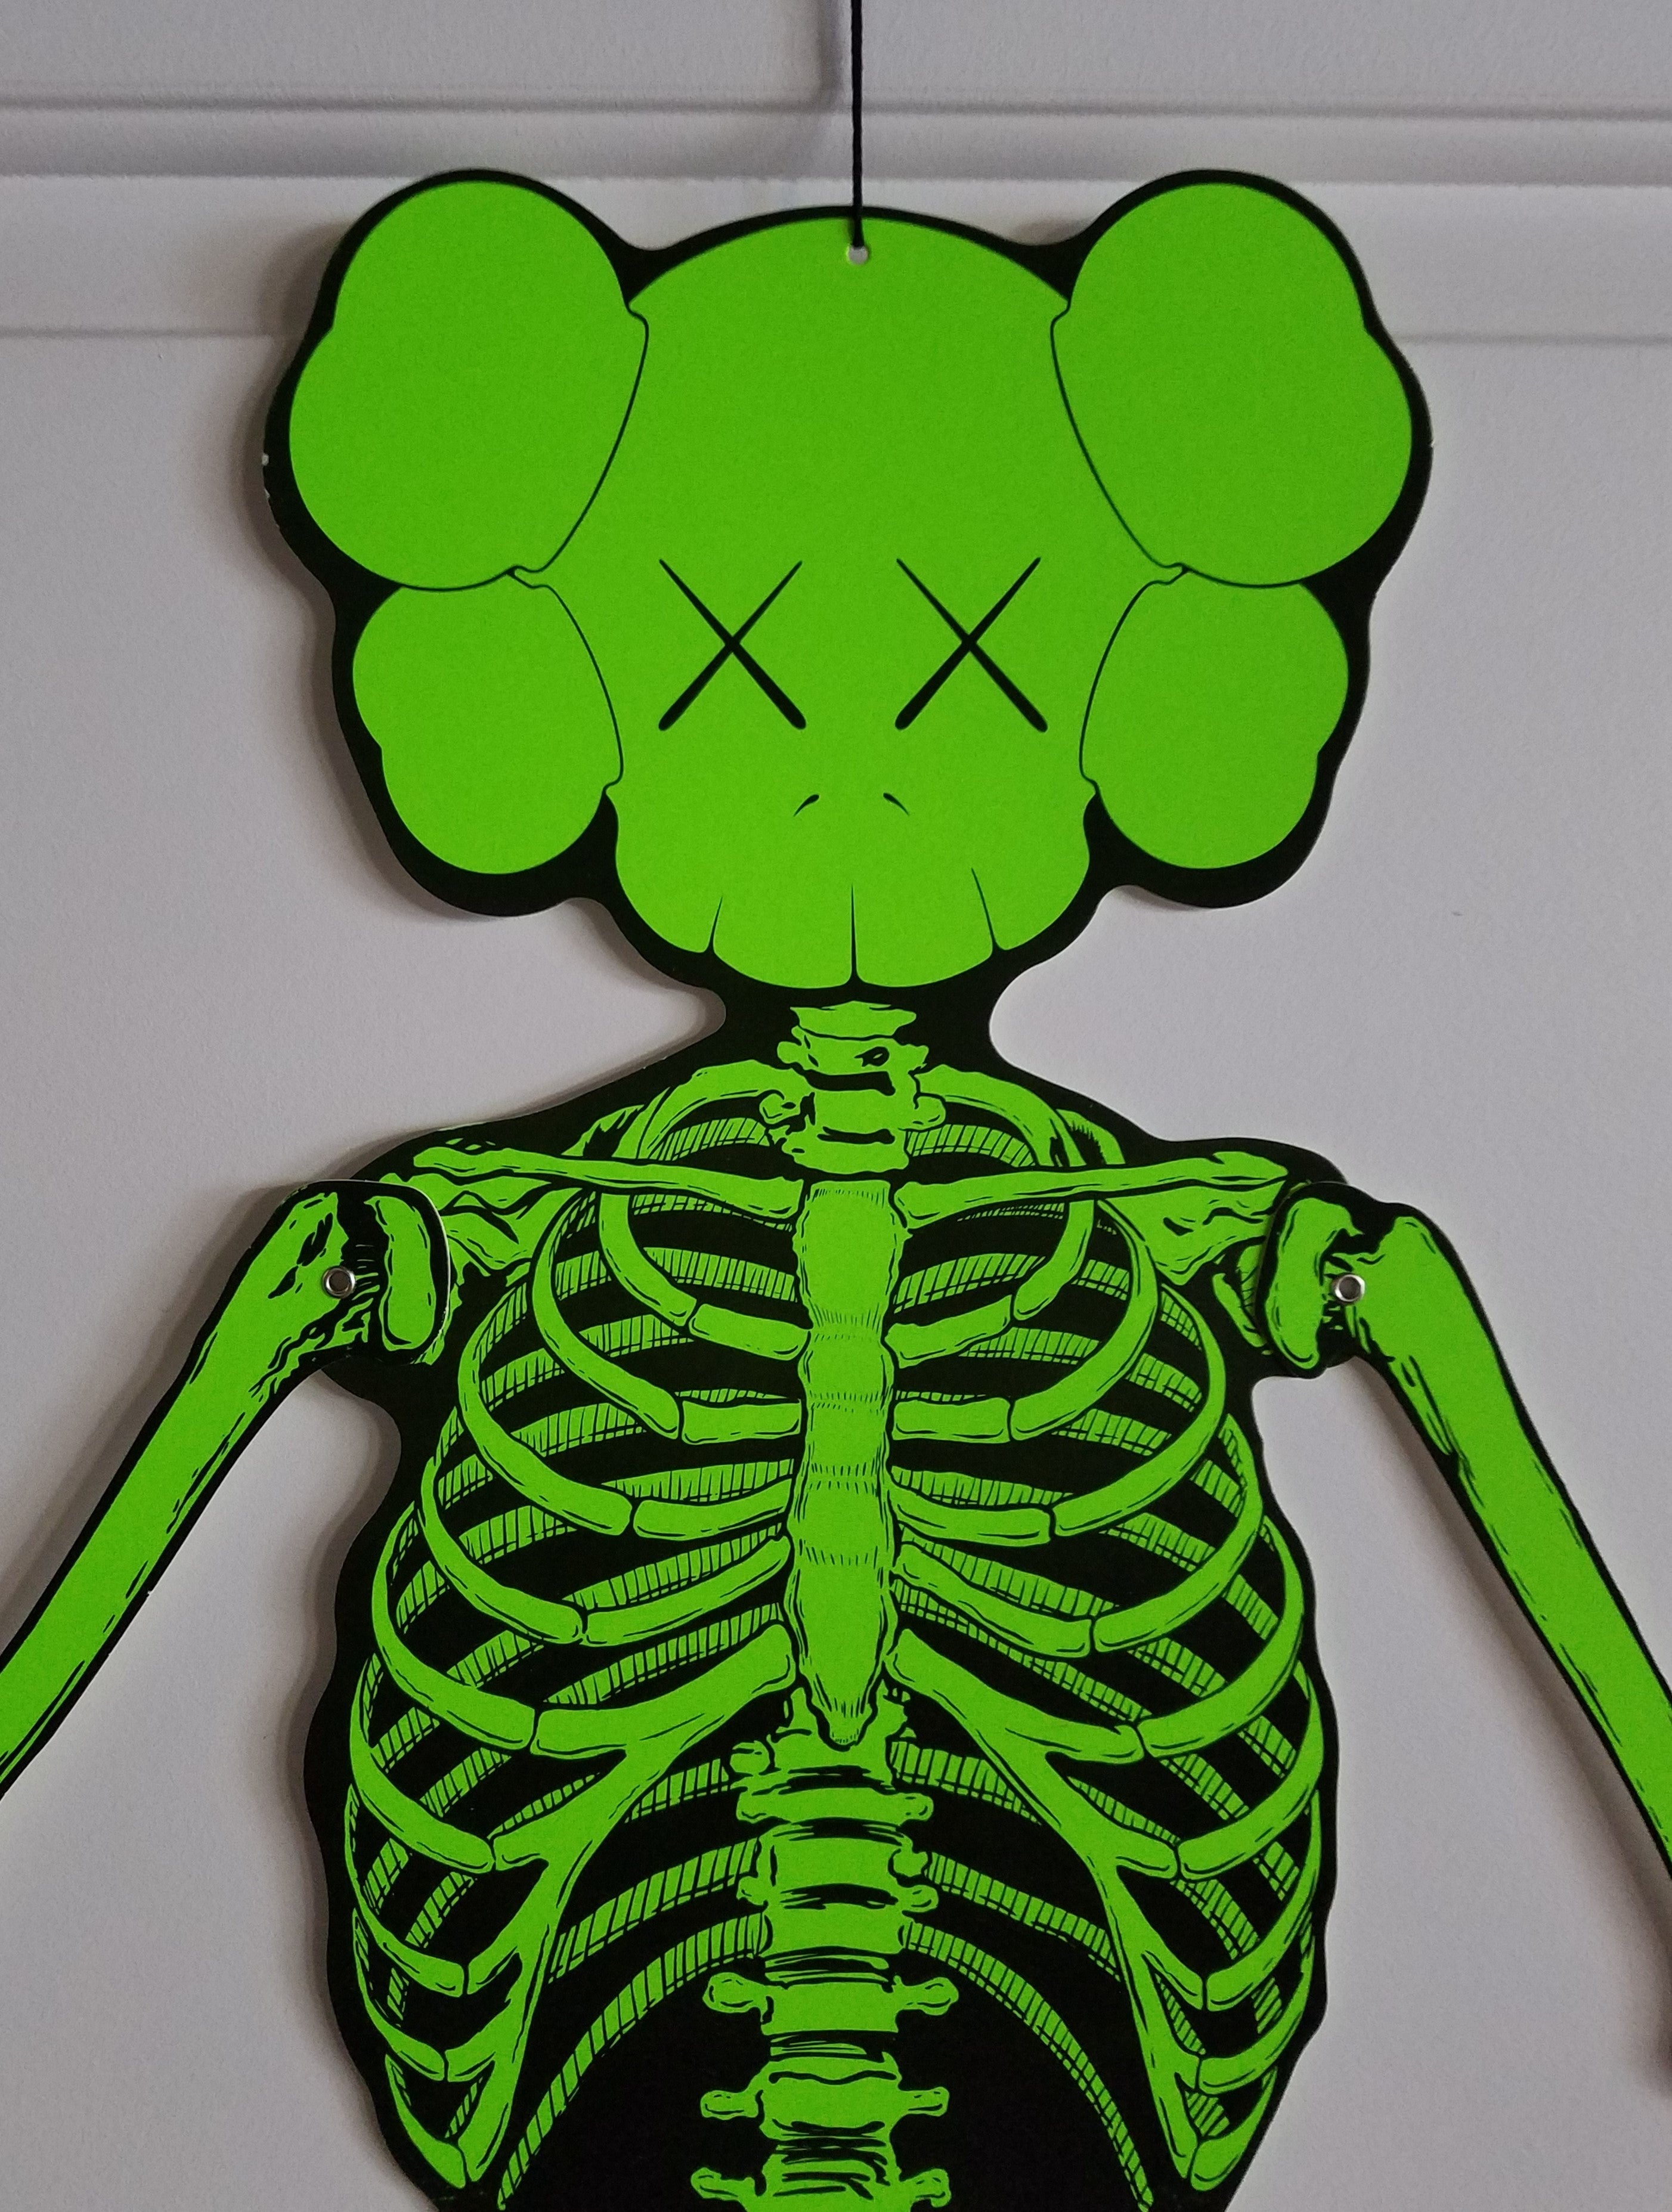 Kaws Skeleton Wall Hanging - Green